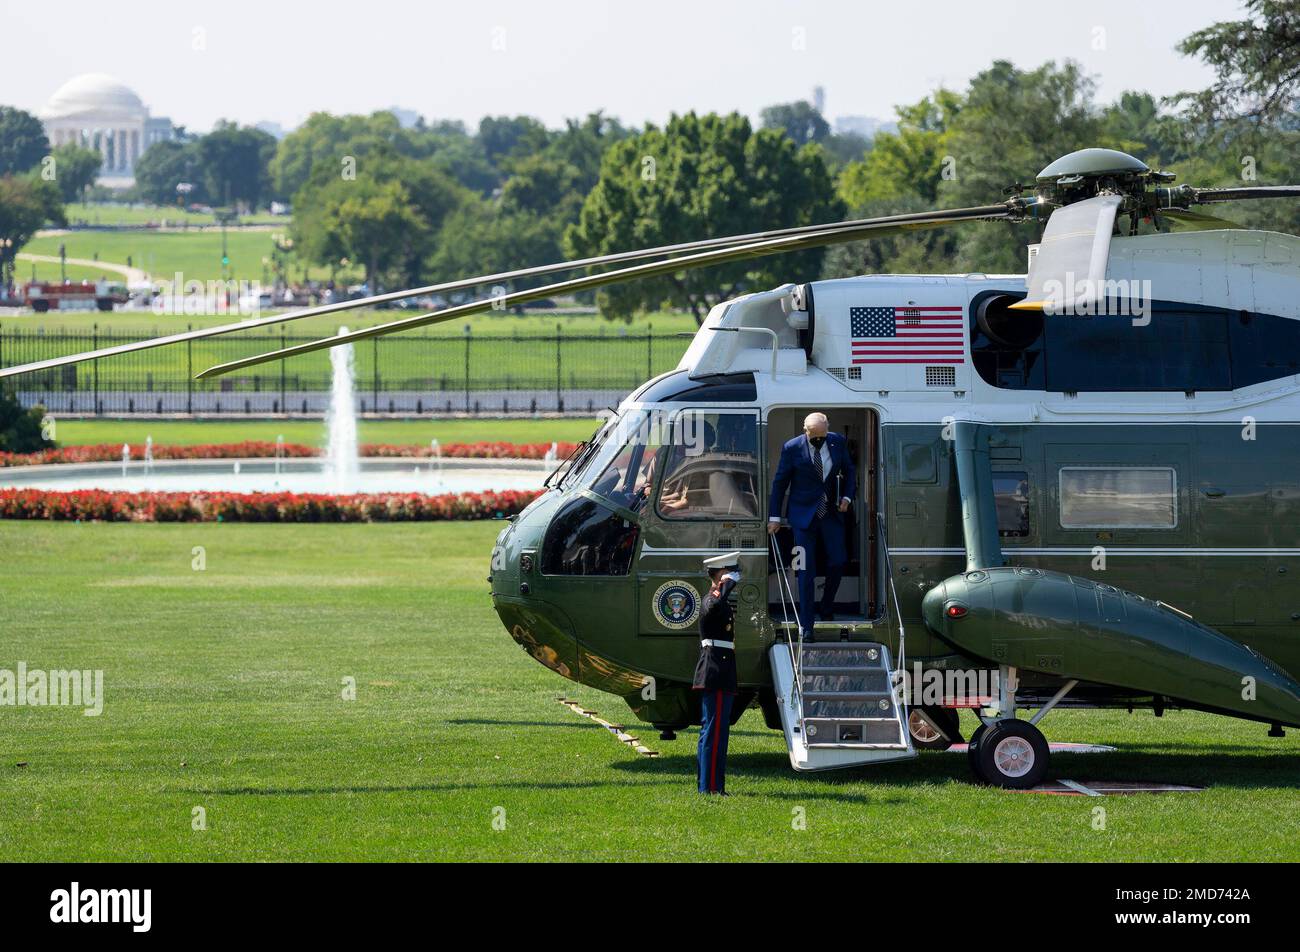 Reportage: Le président Joe Biden débarque Marine One sur la pelouse sud de la Maison Blanche, mercredi, 24 août 2022, après son voyage à la plage de Rehoboth, Delaware Banque D'Images